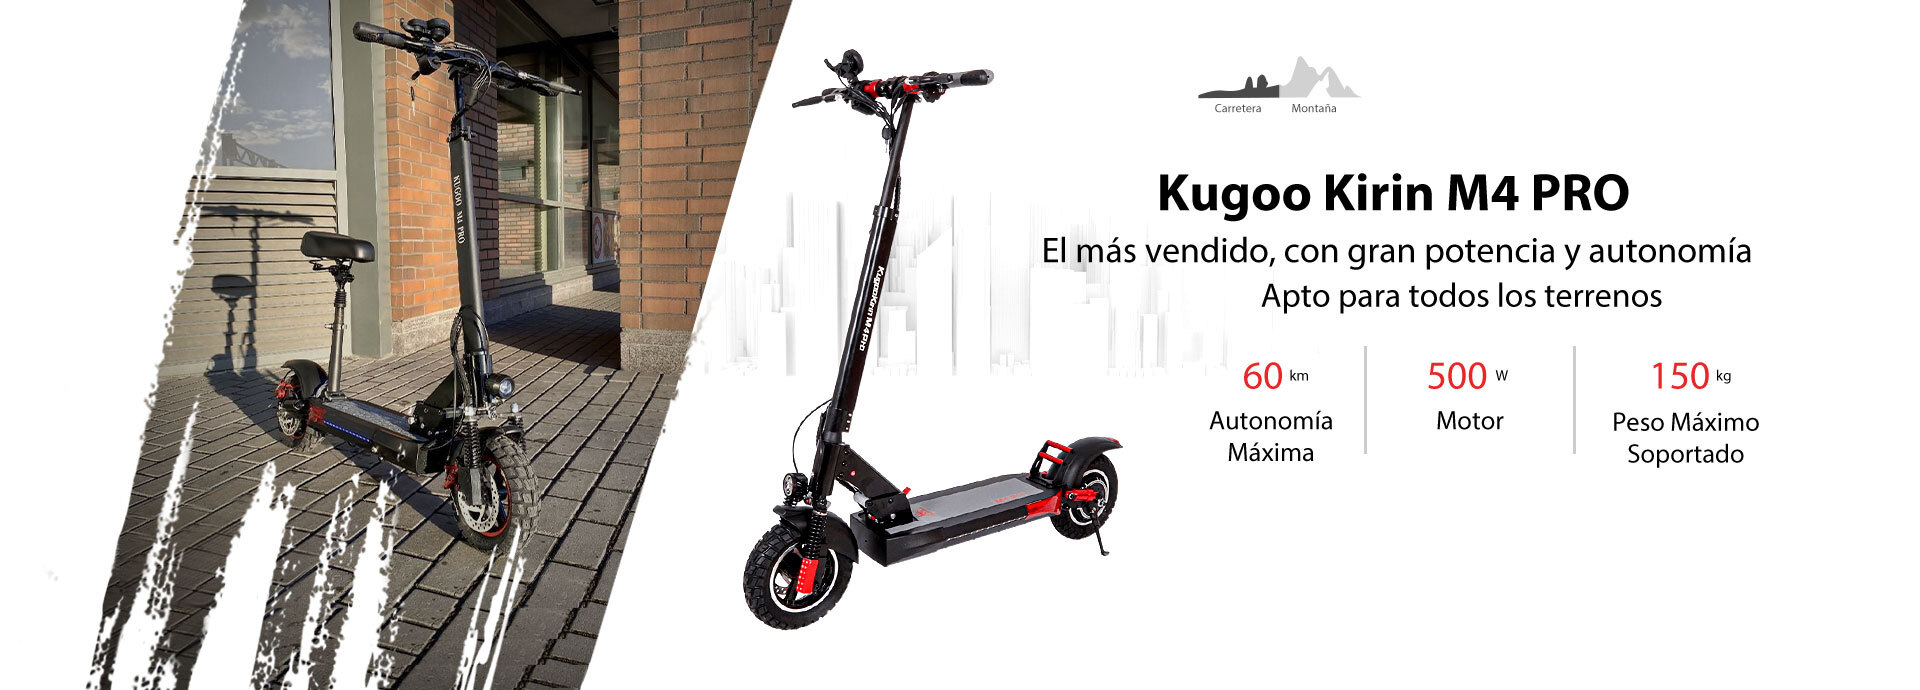 El patinete eléctrico más vendido, Kugoo Kirin M4 Pro